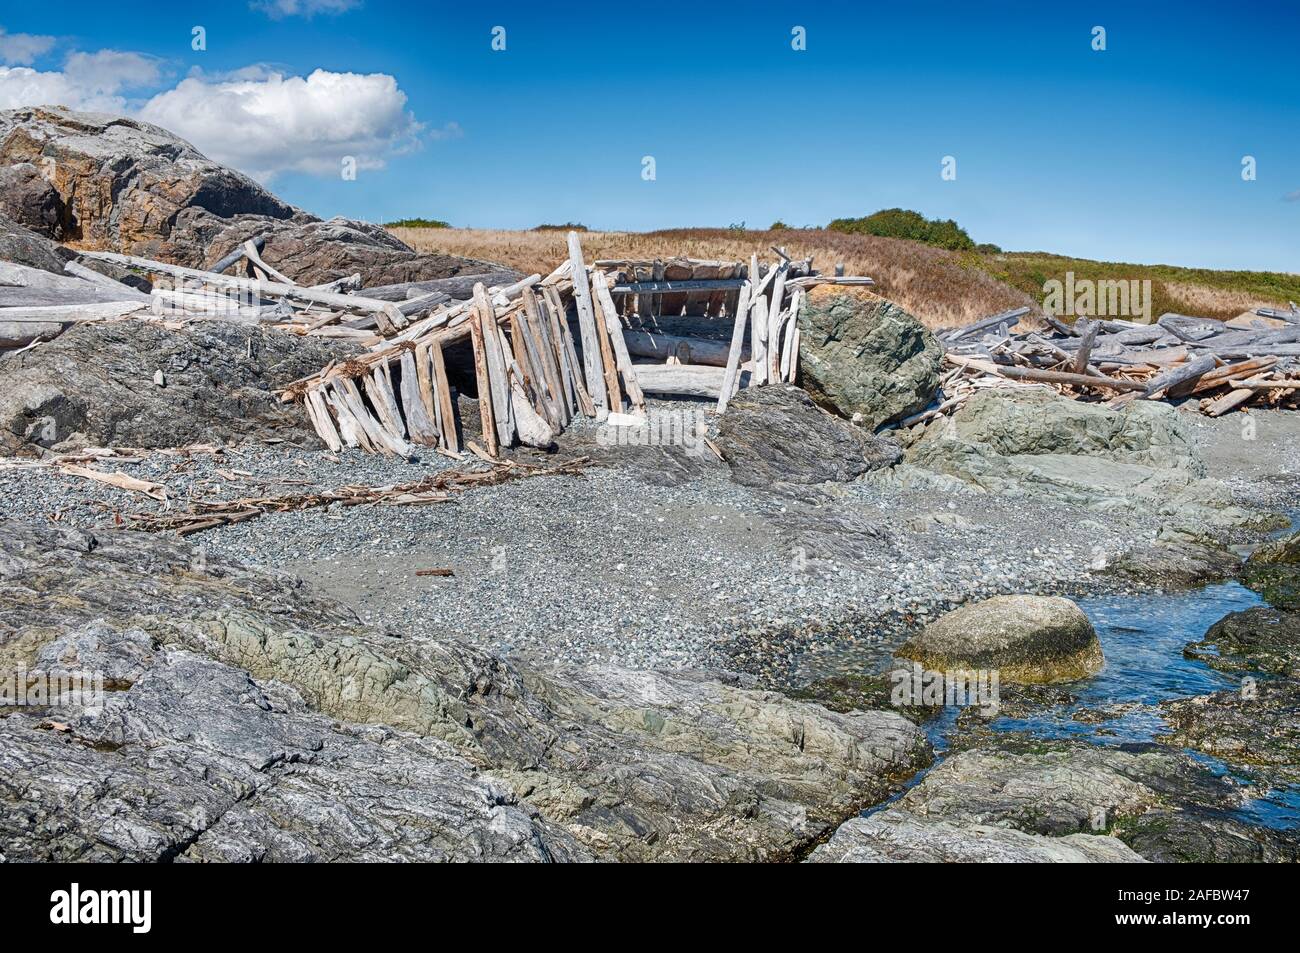 Piezas de driftwood se han tirado a inclinarse contra las rocas para formar grandes refugios en la playa cerca de American Camp en la Isla San Juan. Foto de stock